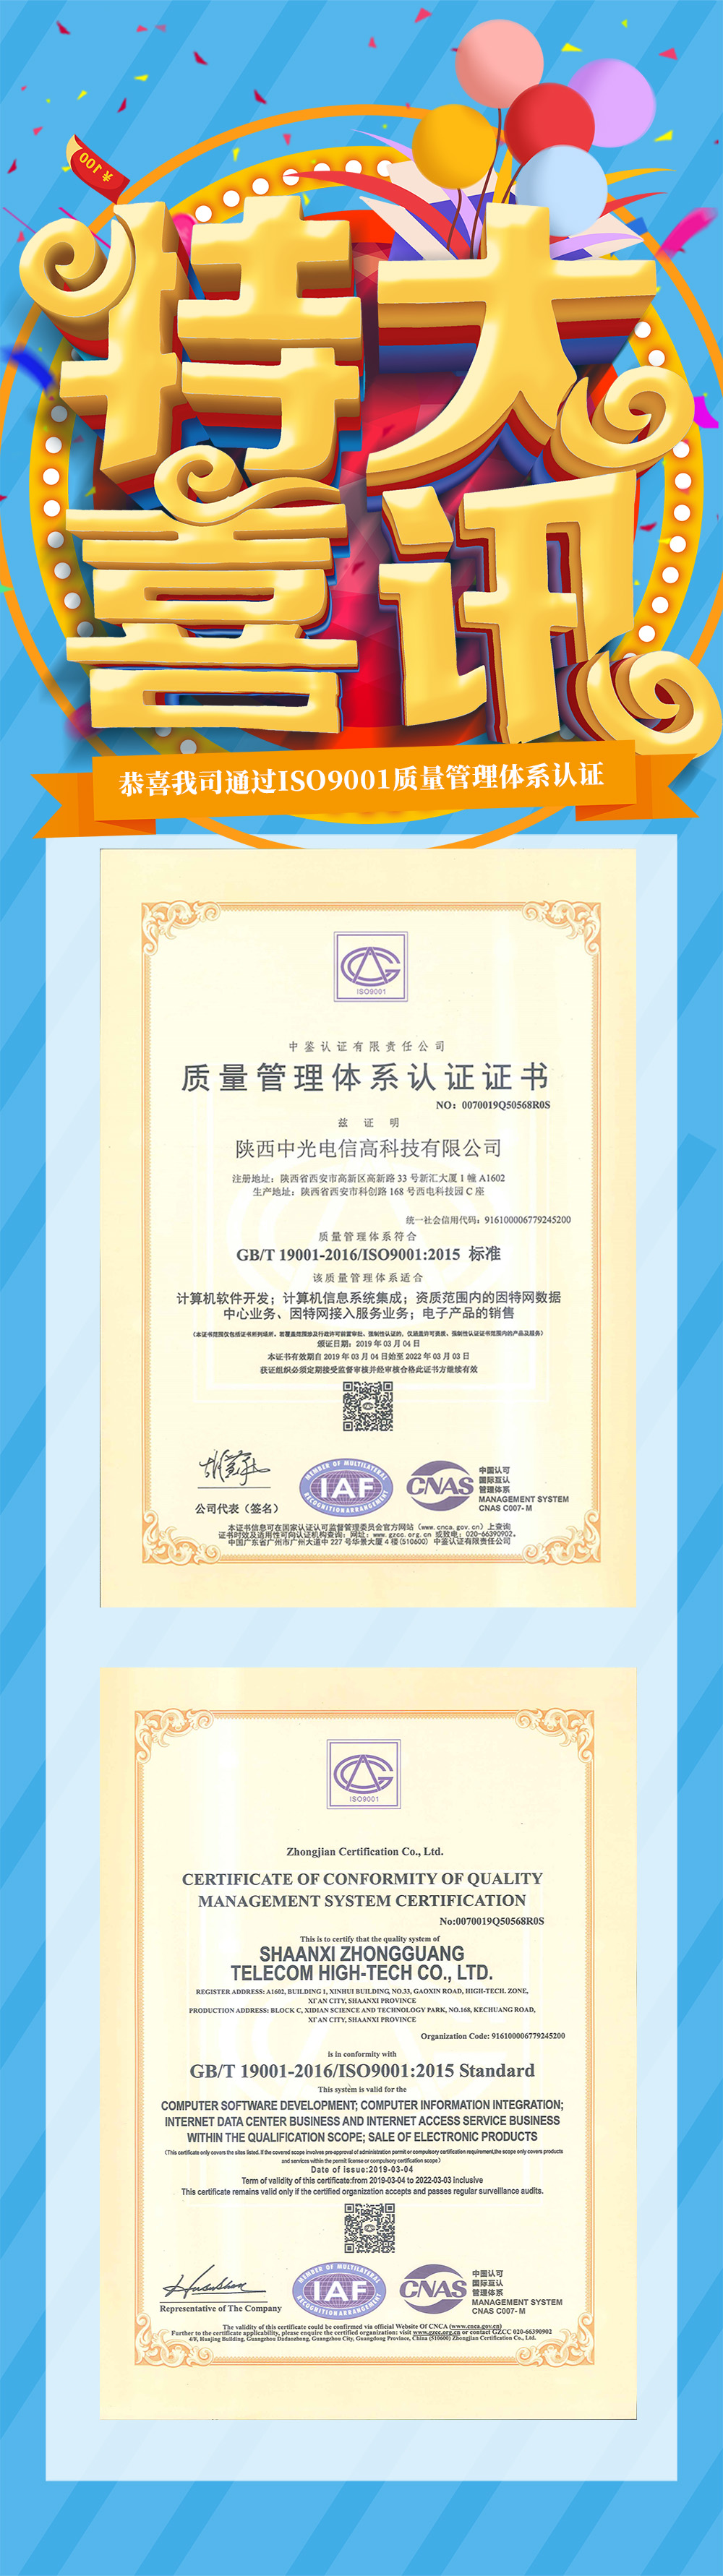 喜讯-恭喜我司通过ISO9001质量管理体系认证